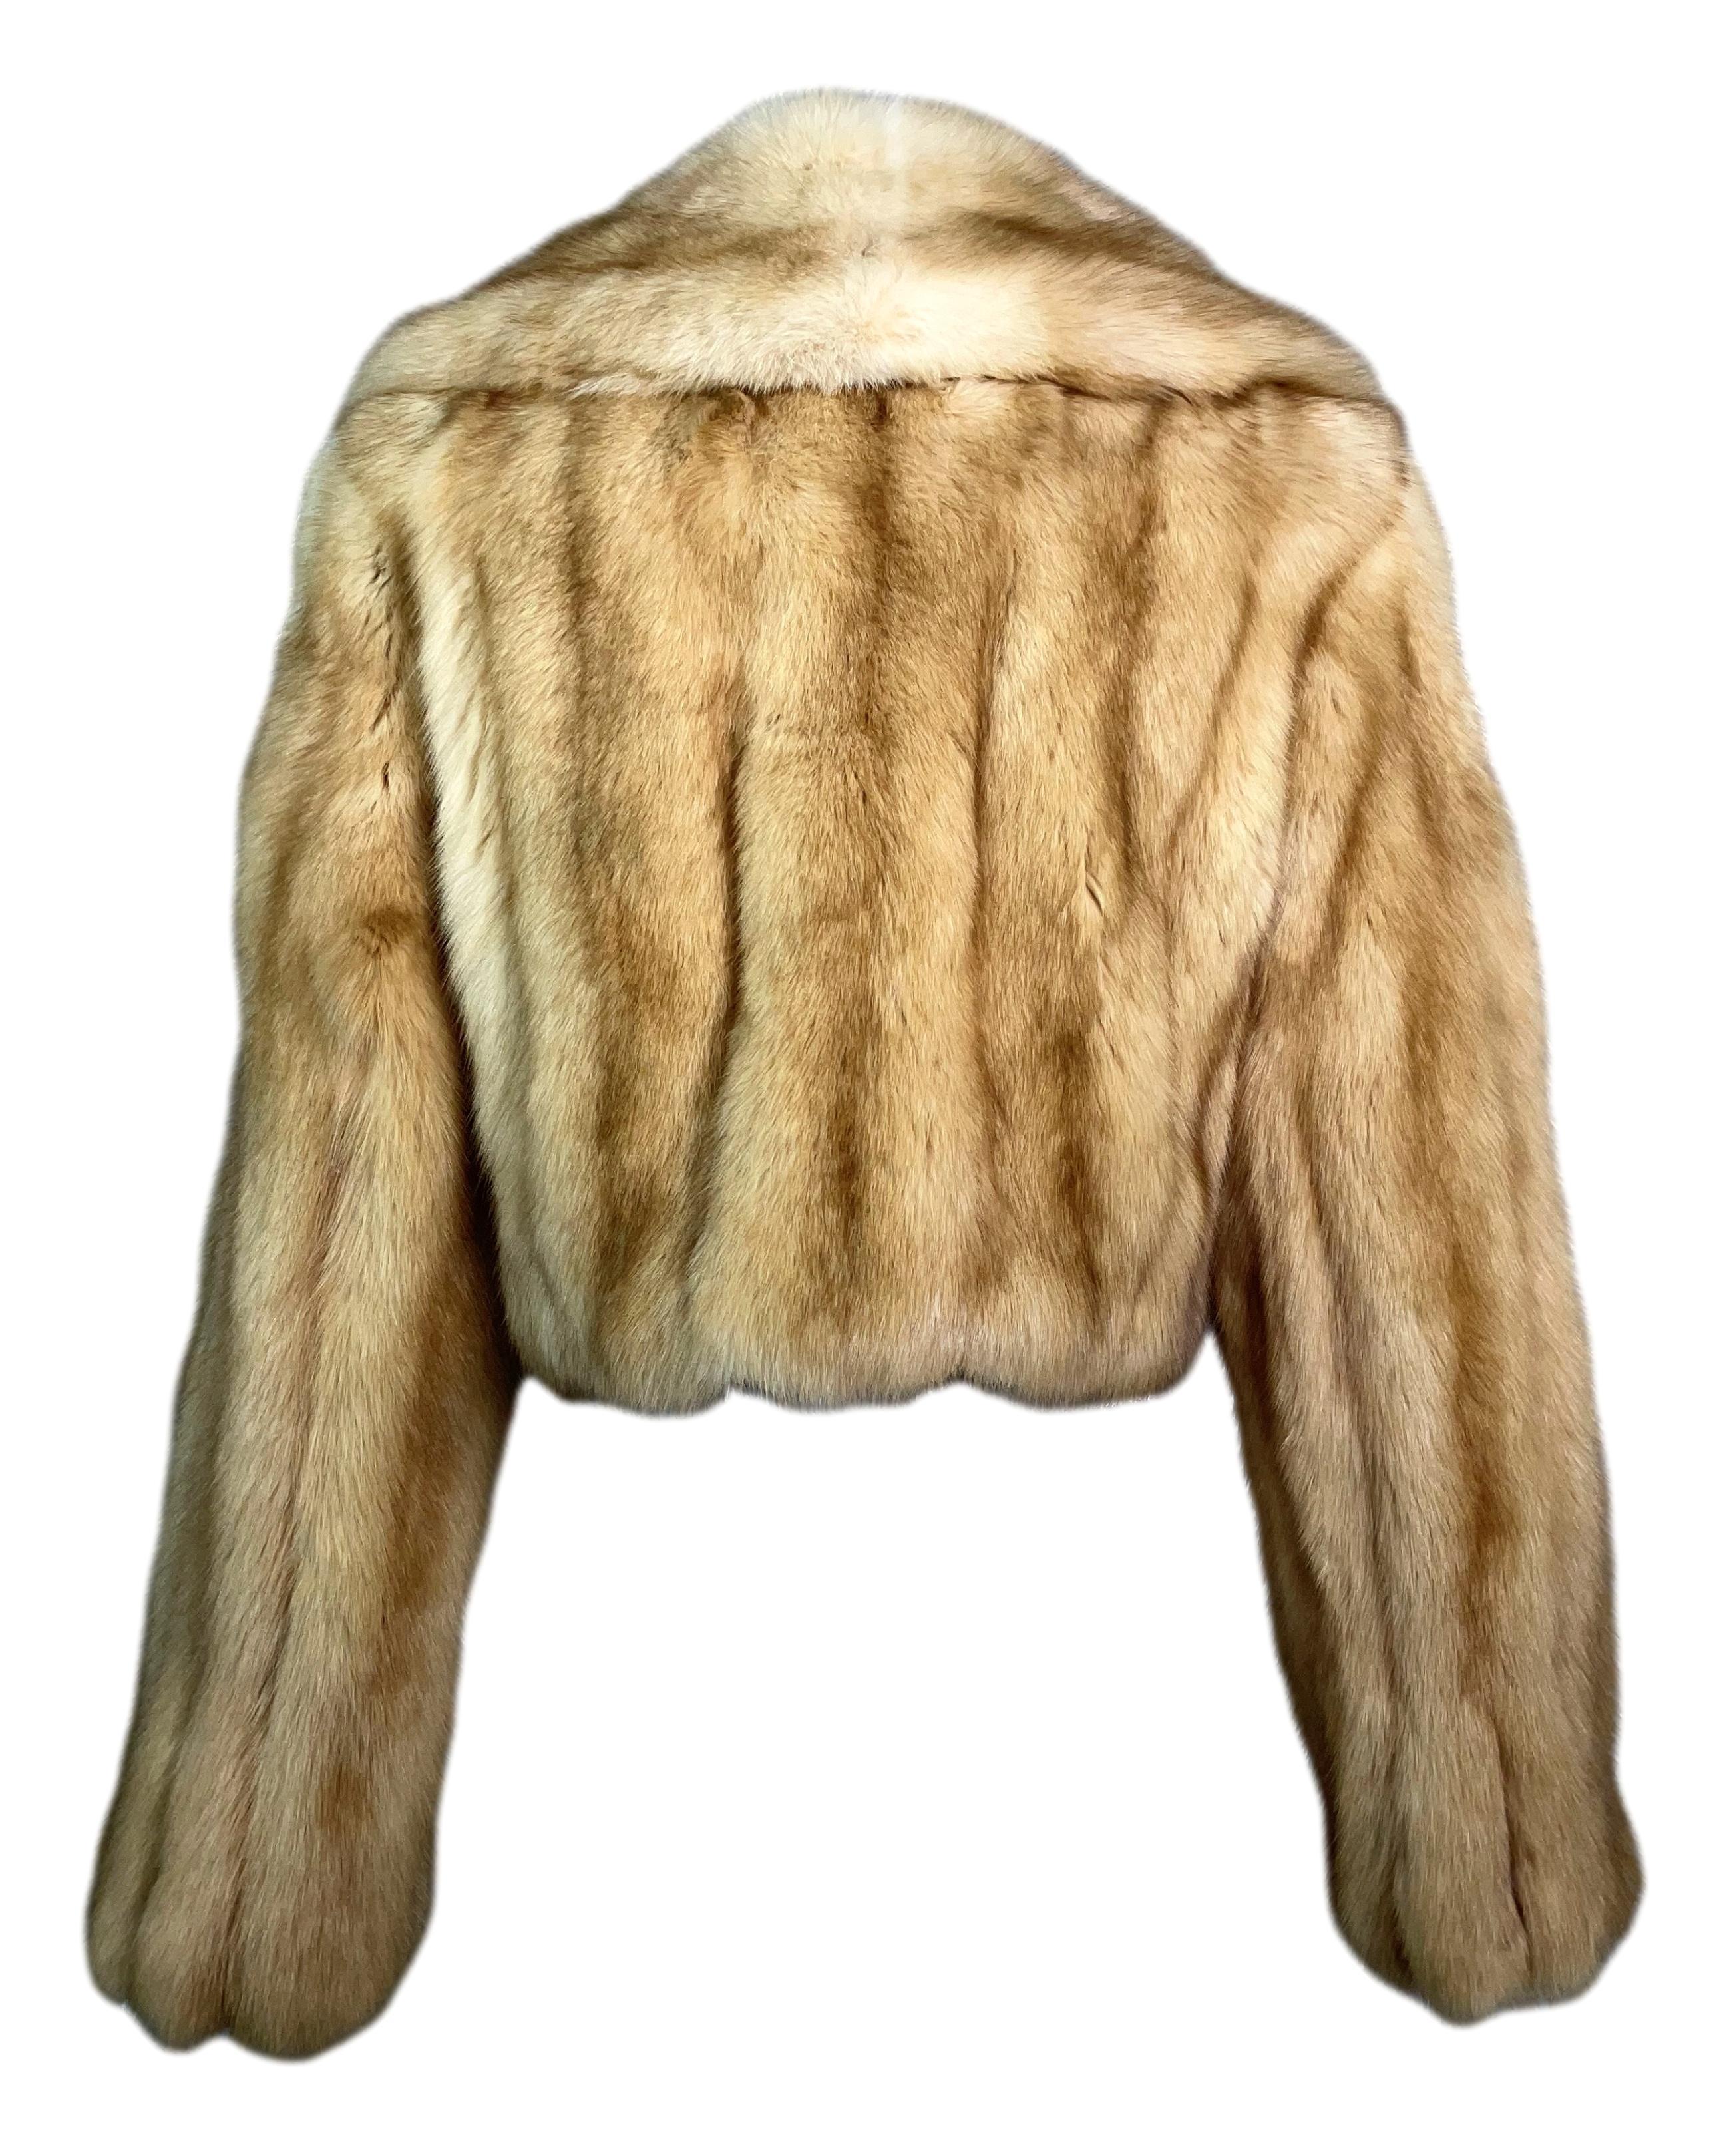 Vintage 1990's Louis Feraud Golden Fur Cropped Jacket Coat 2